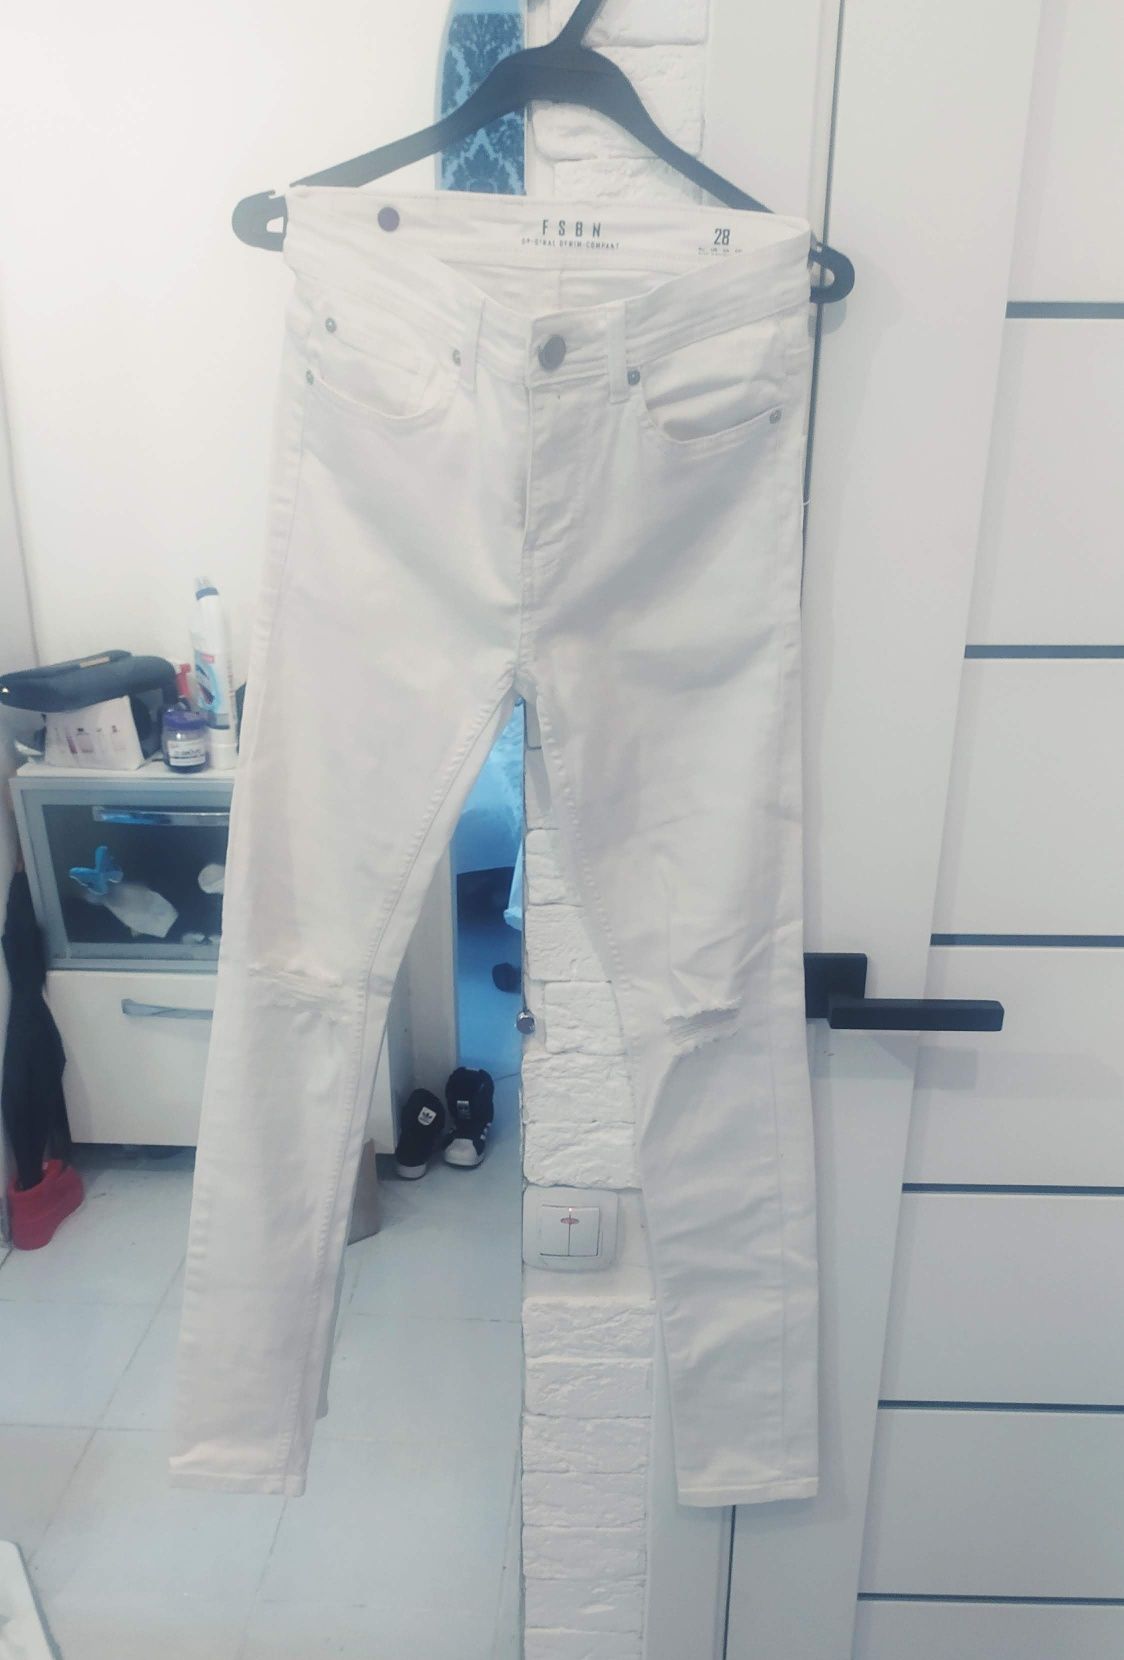 Стильные джинсы с рваностями белые FSBN New Yorker р.28(13-15 лет)